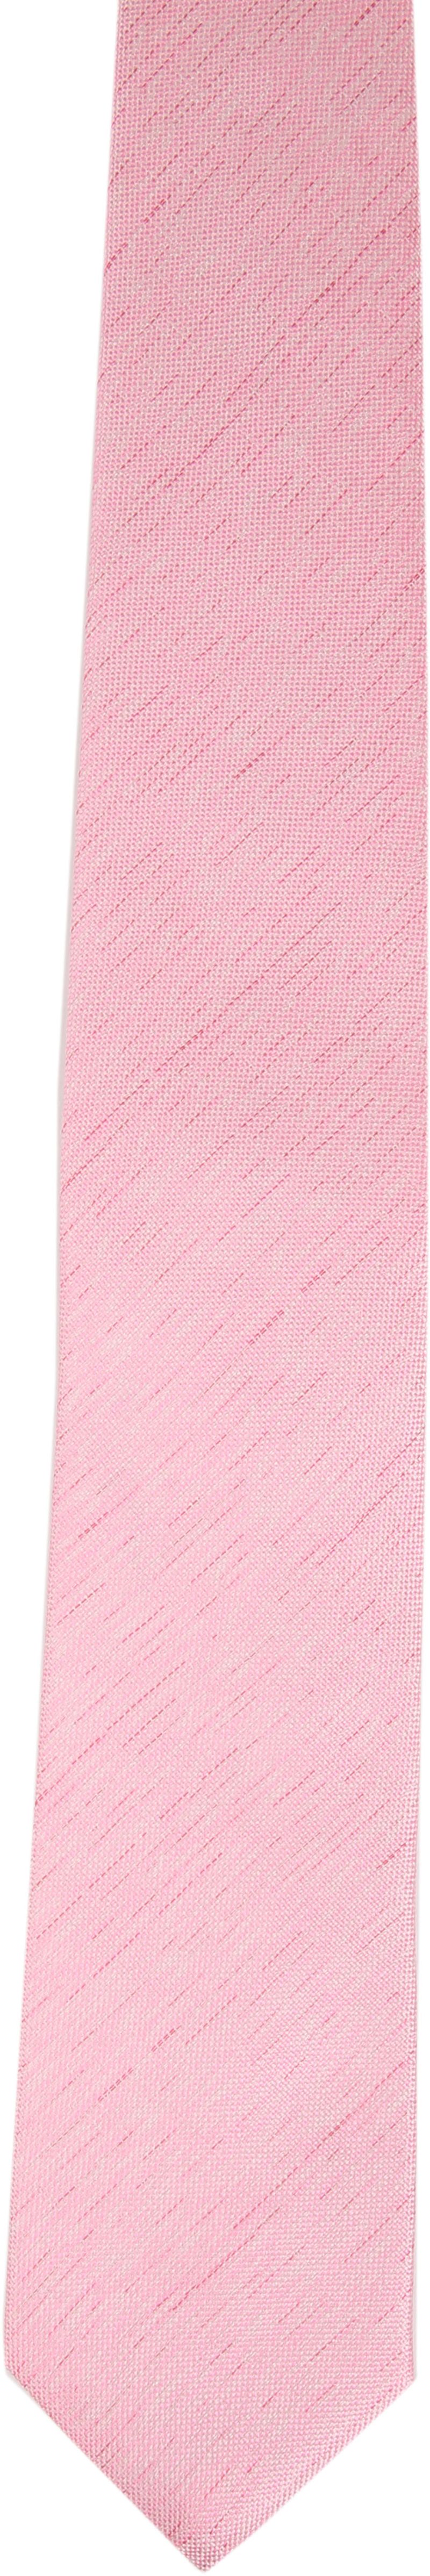 Krawatte Seide Rosa K81-3 - günstig online kaufen